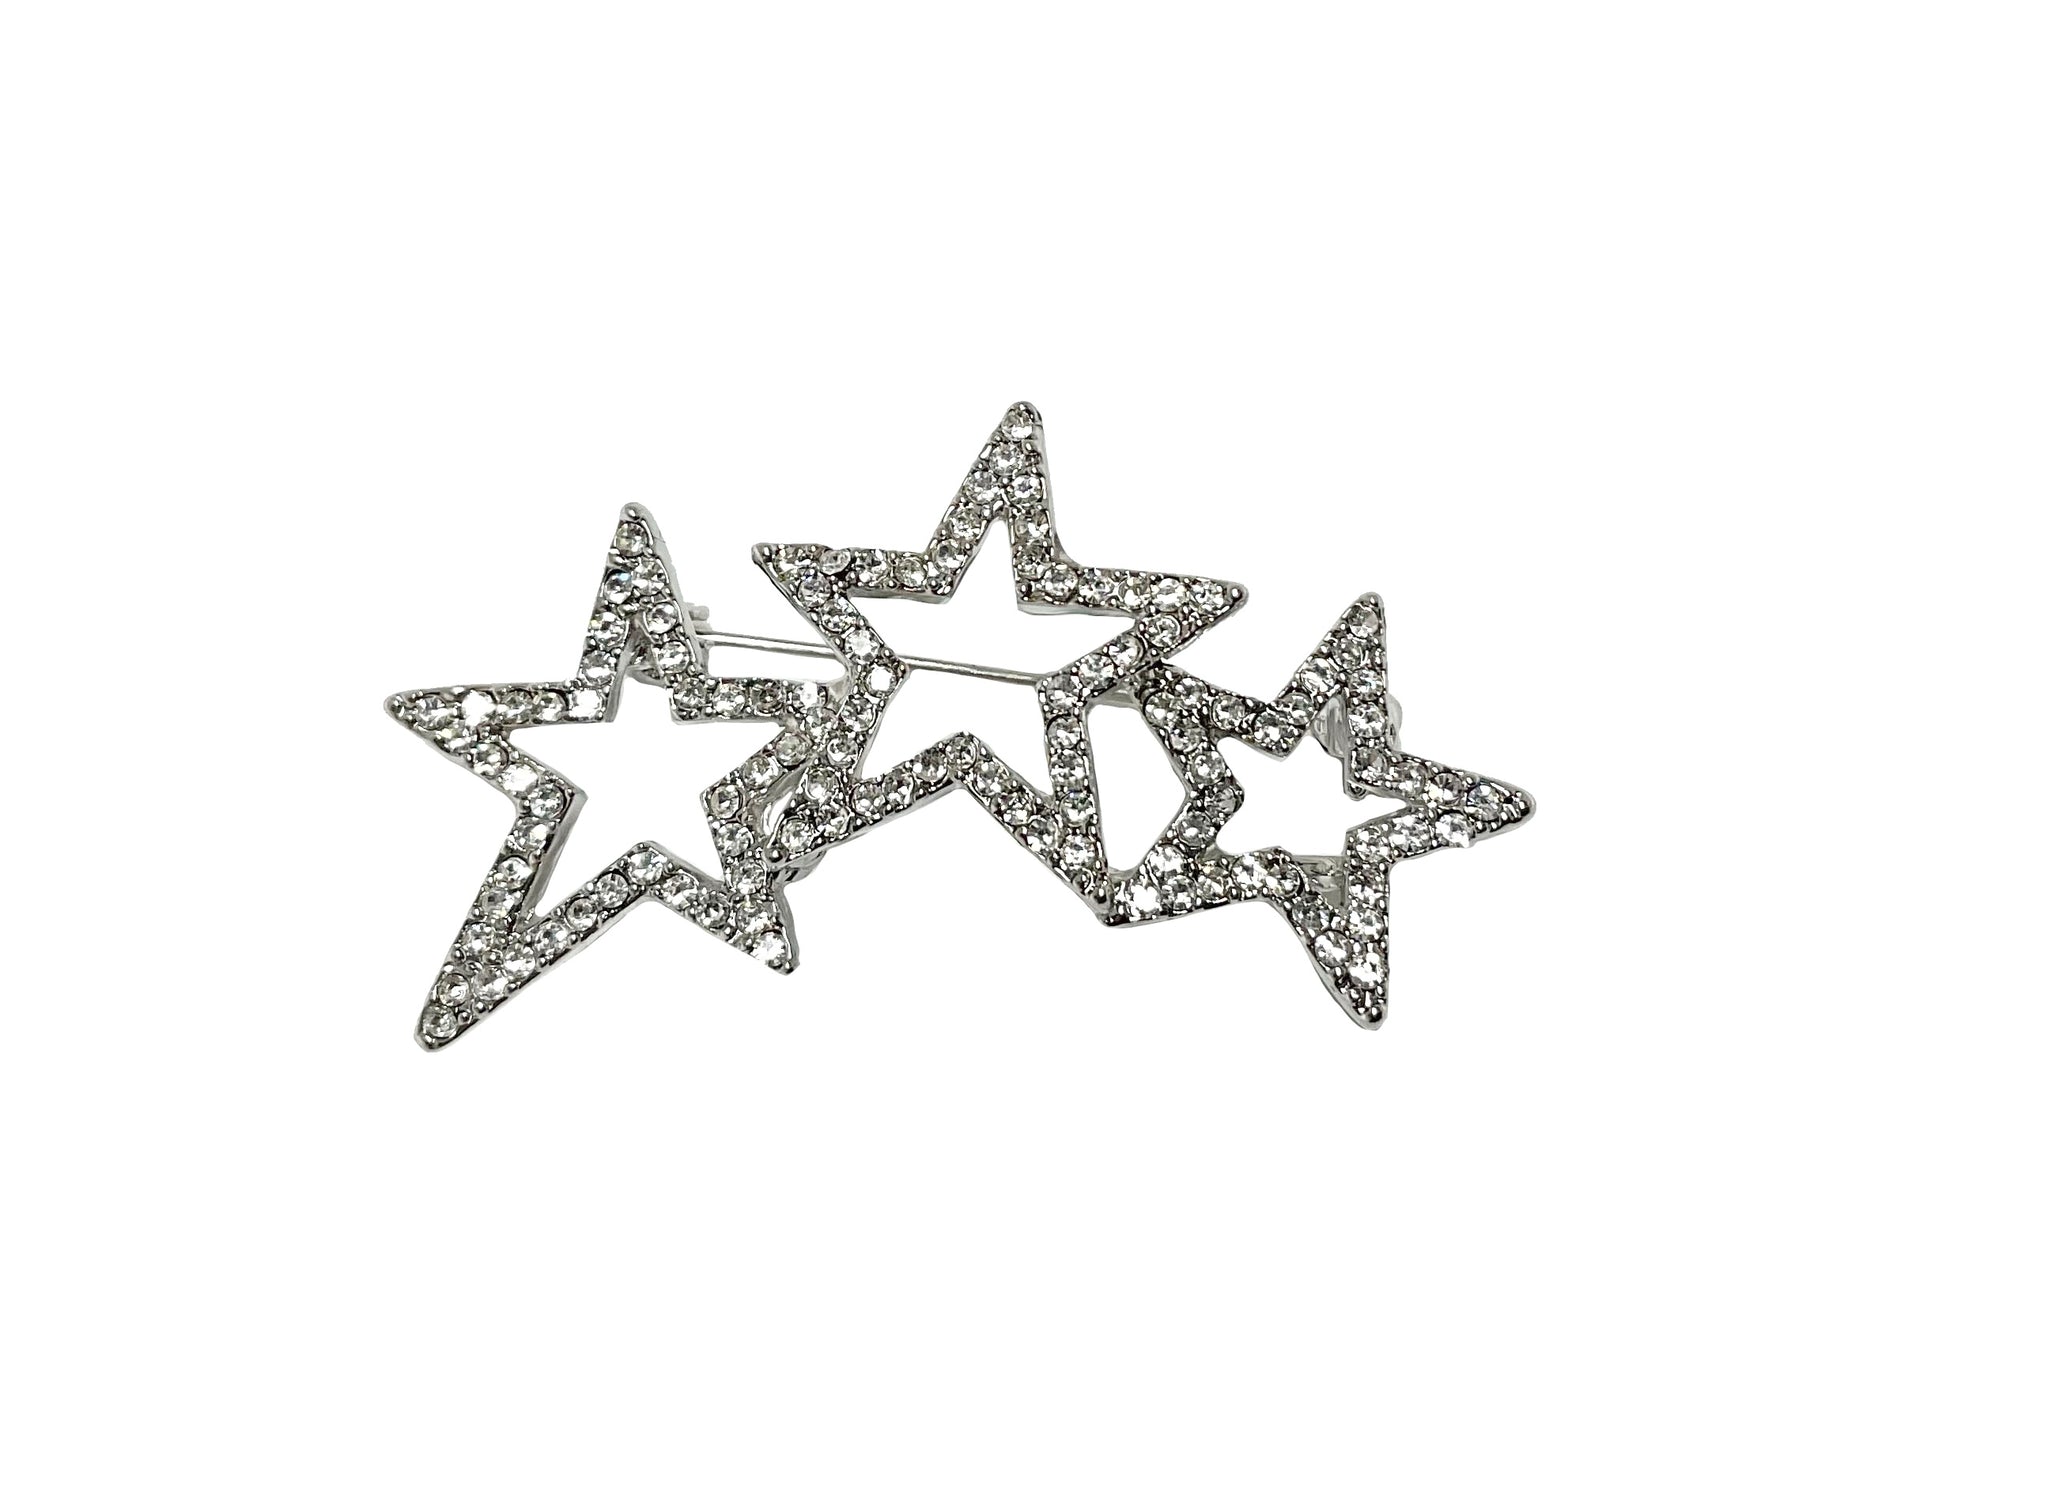 Crystal 3 Star Pin #88-09114